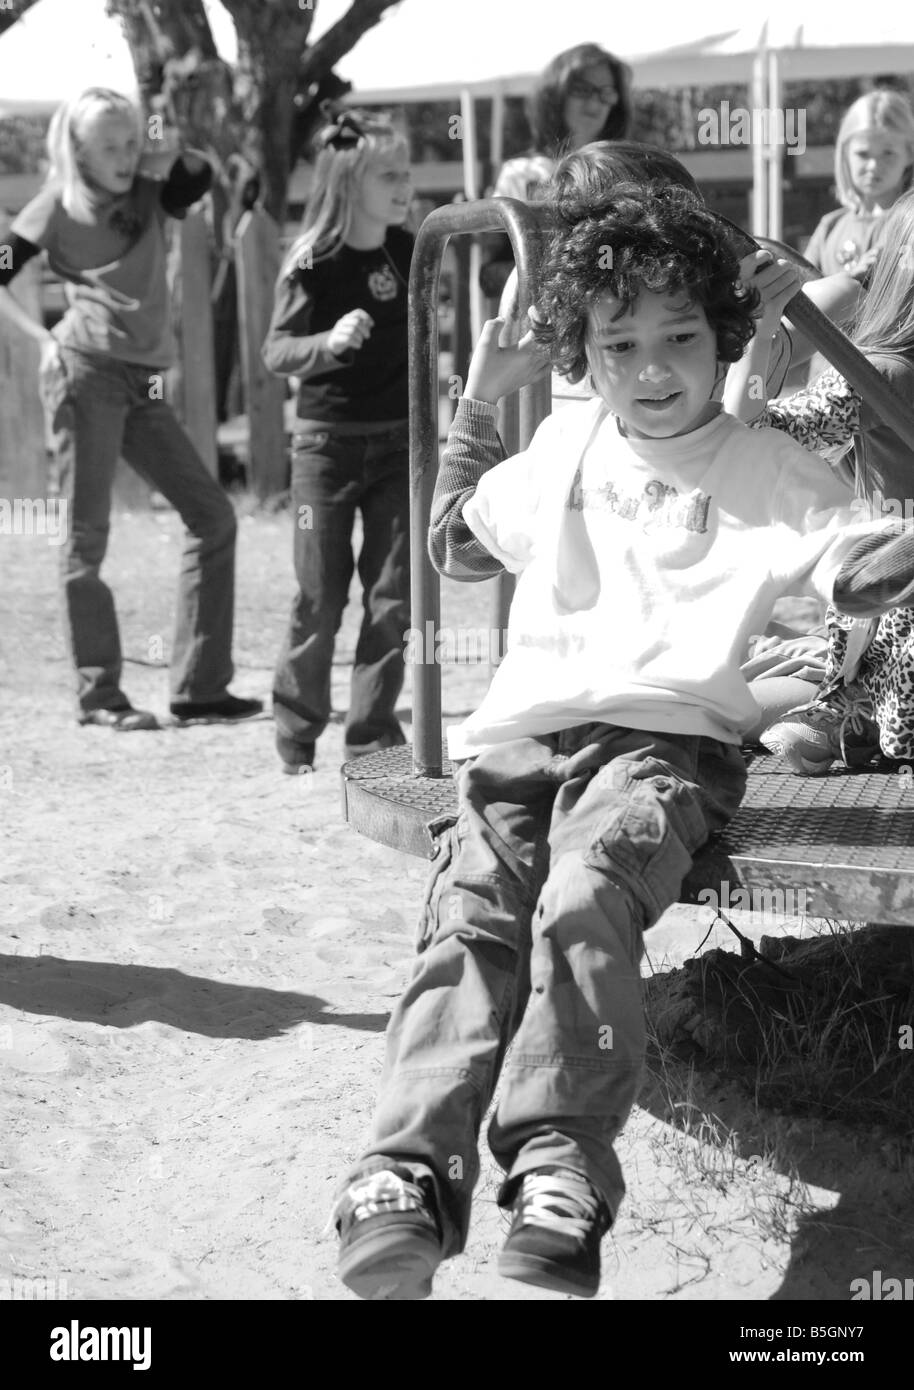 Image en noir et blanc d'un petit garçon jouant sur un manège sur une aire de jeux Banque D'Images